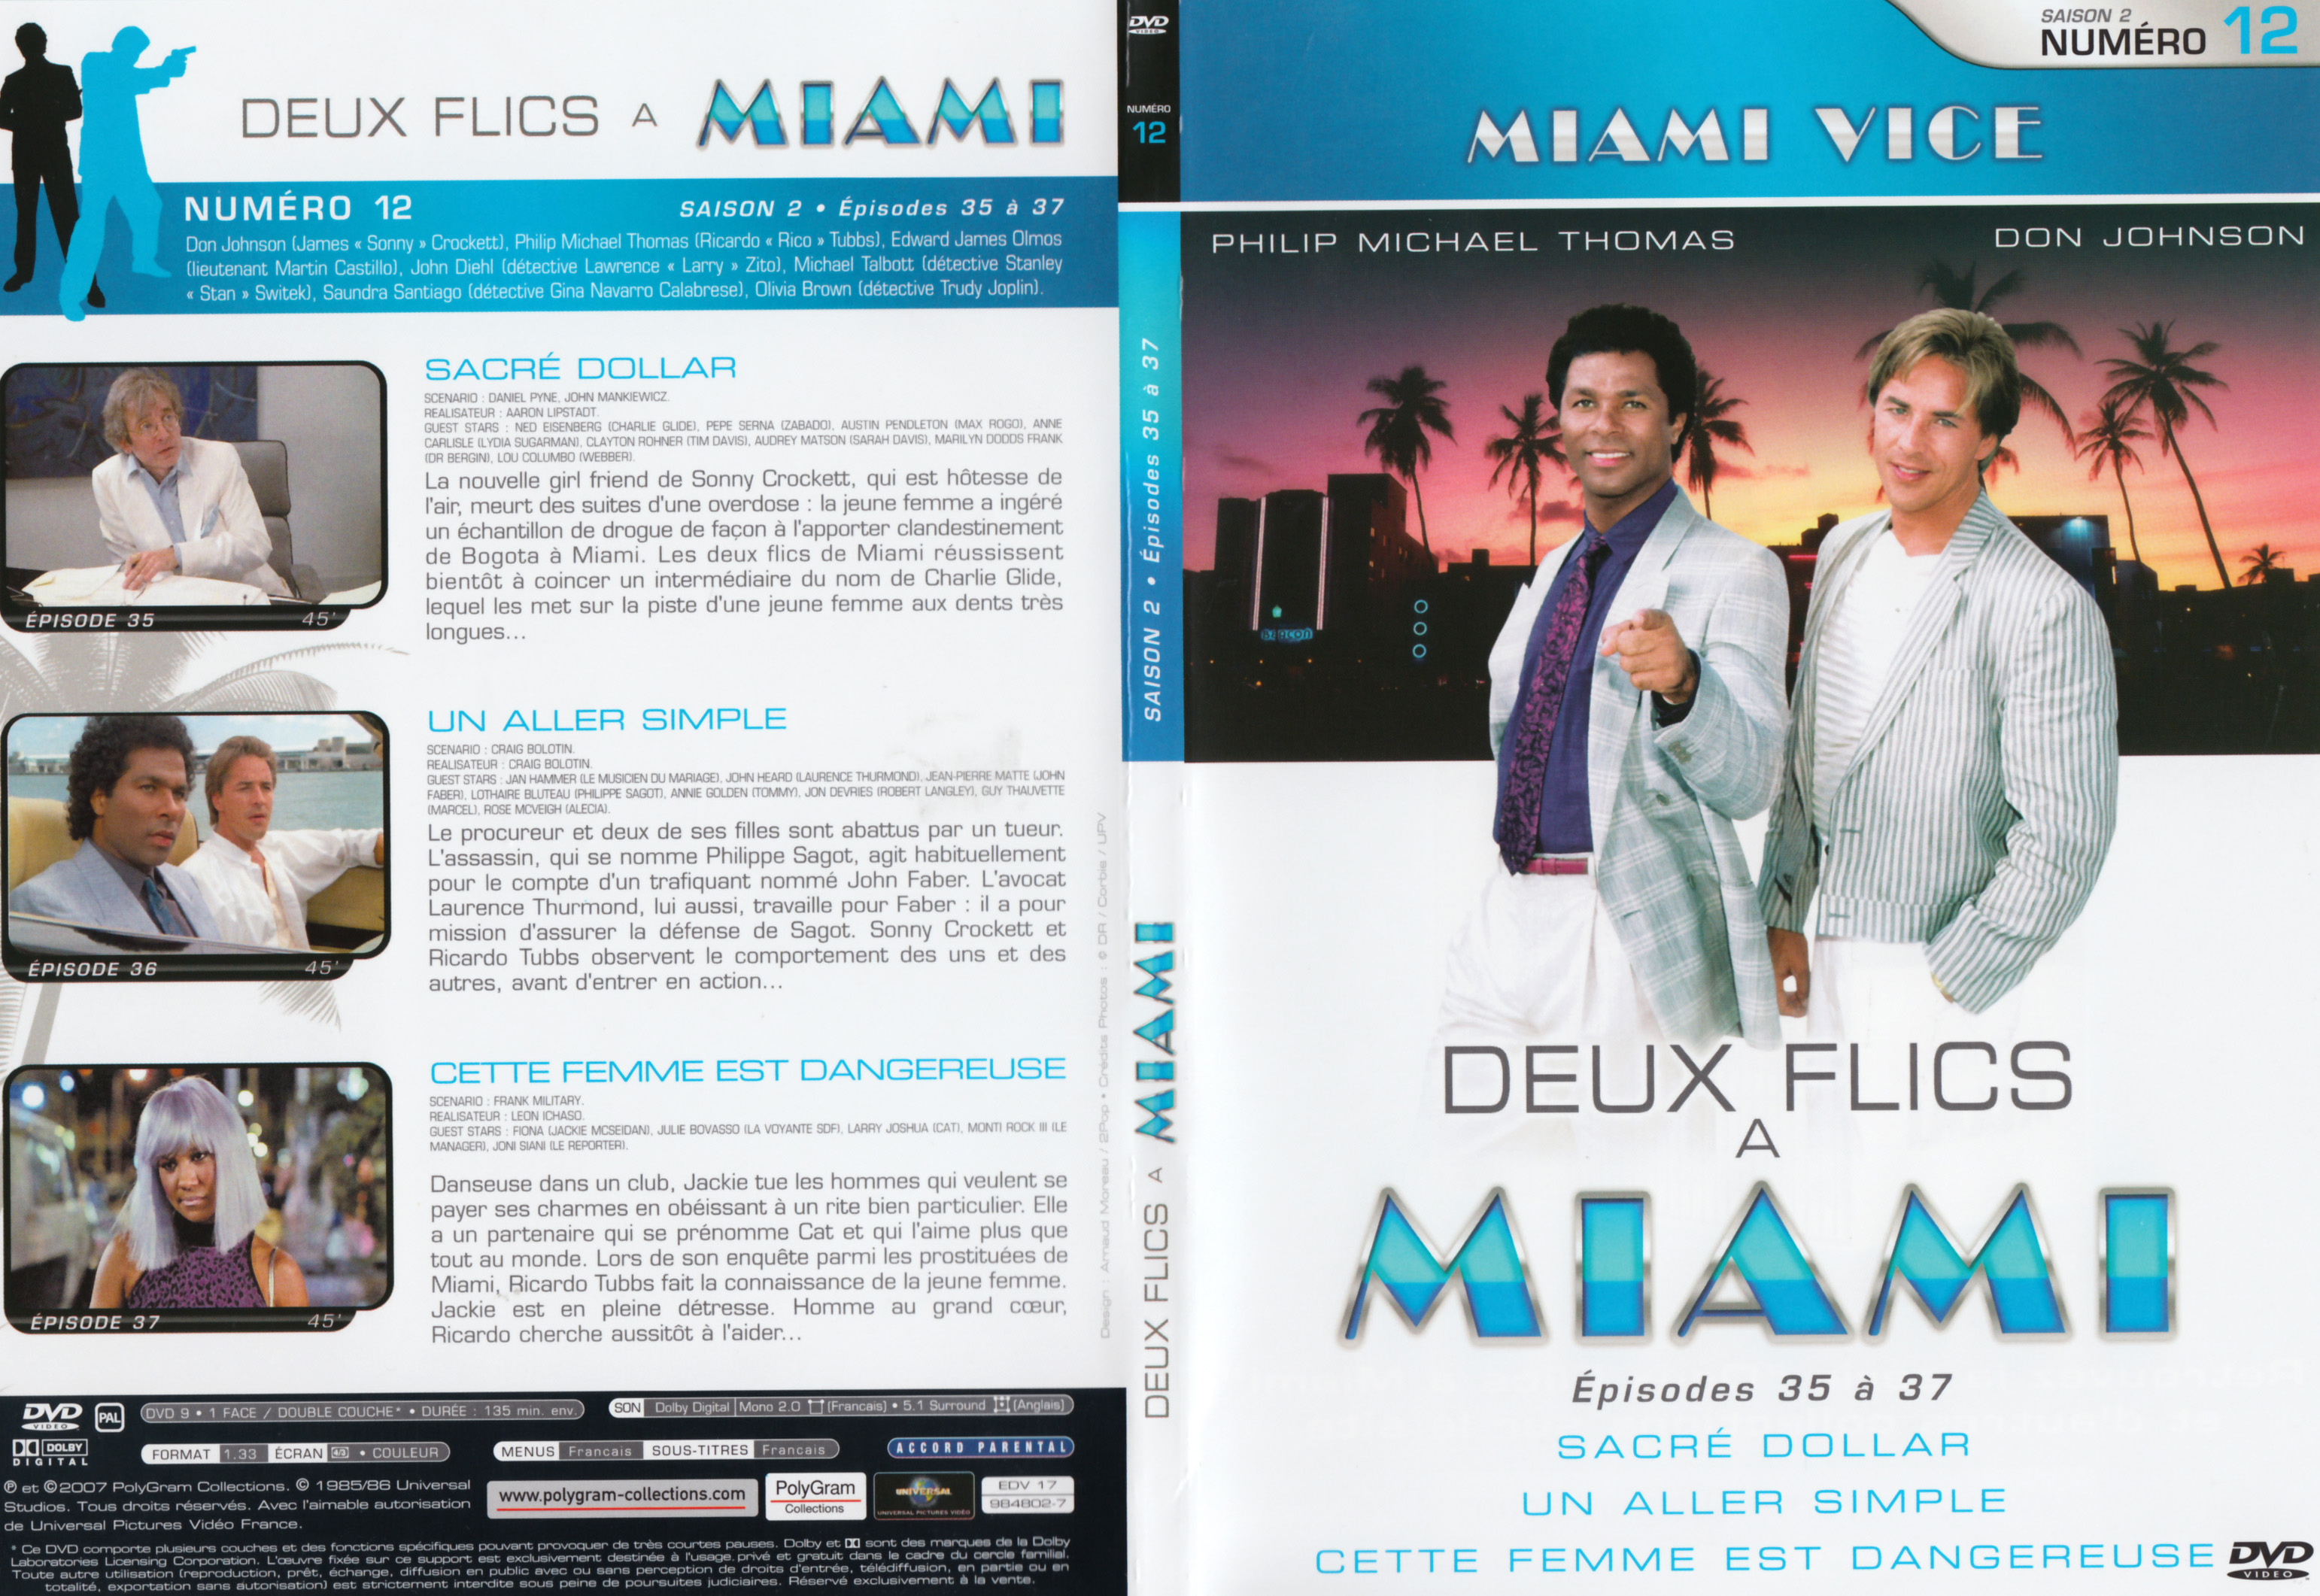 Jaquette DVD Deux flics  Miami Saison 2 vol 12